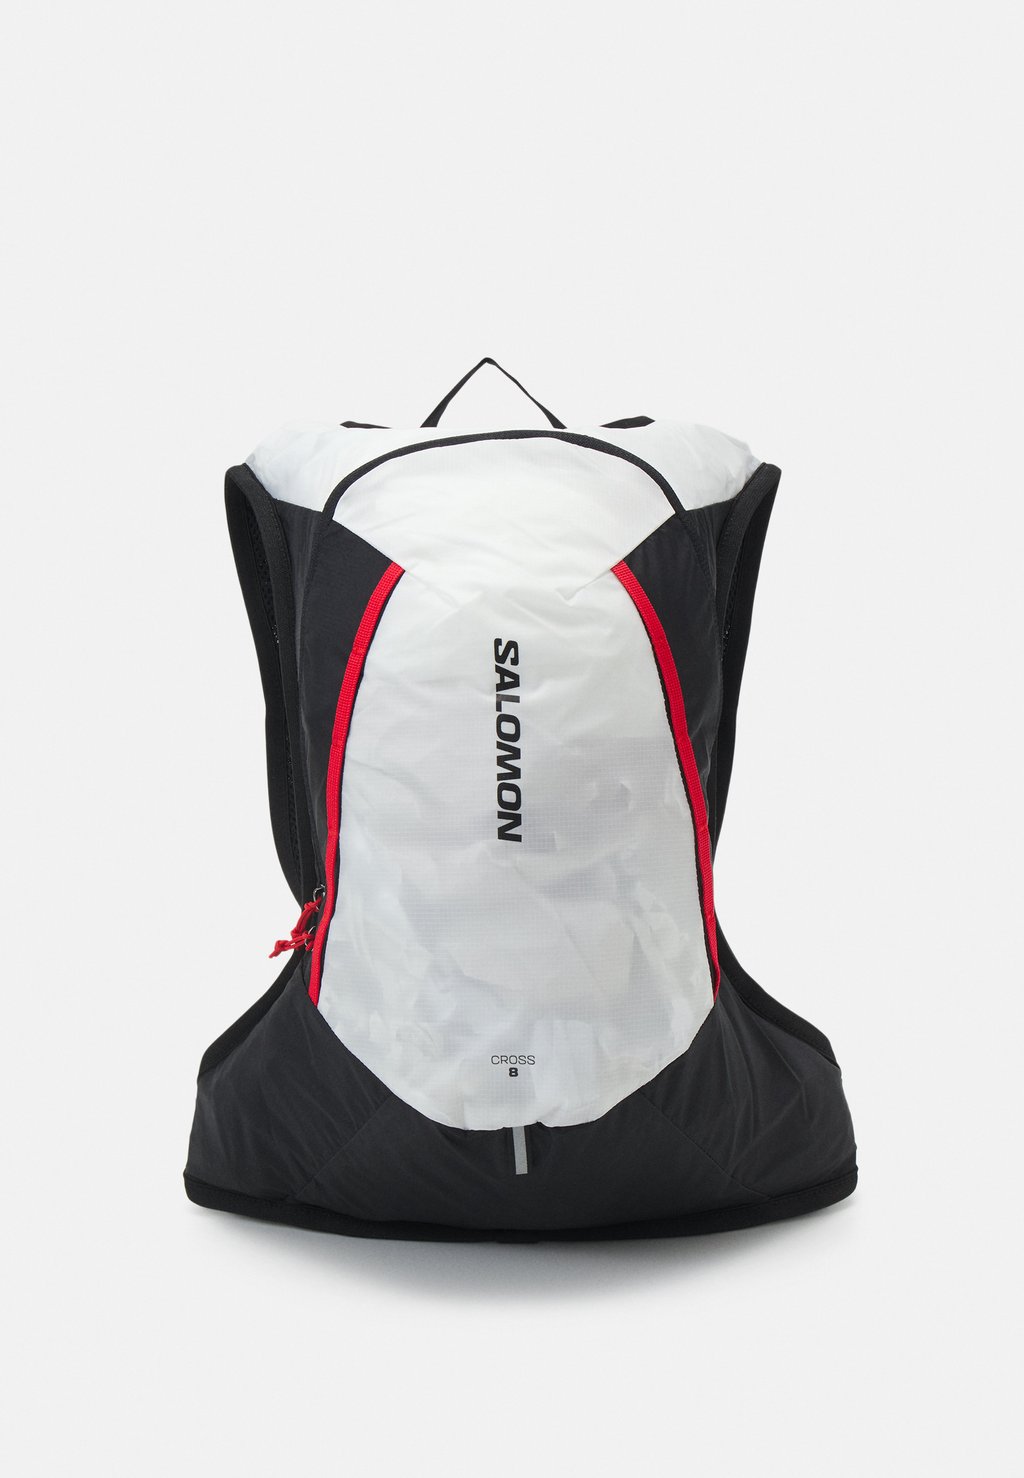 Рюкзак CROSS UNISEX Salomon, цвет white/black цена и фото